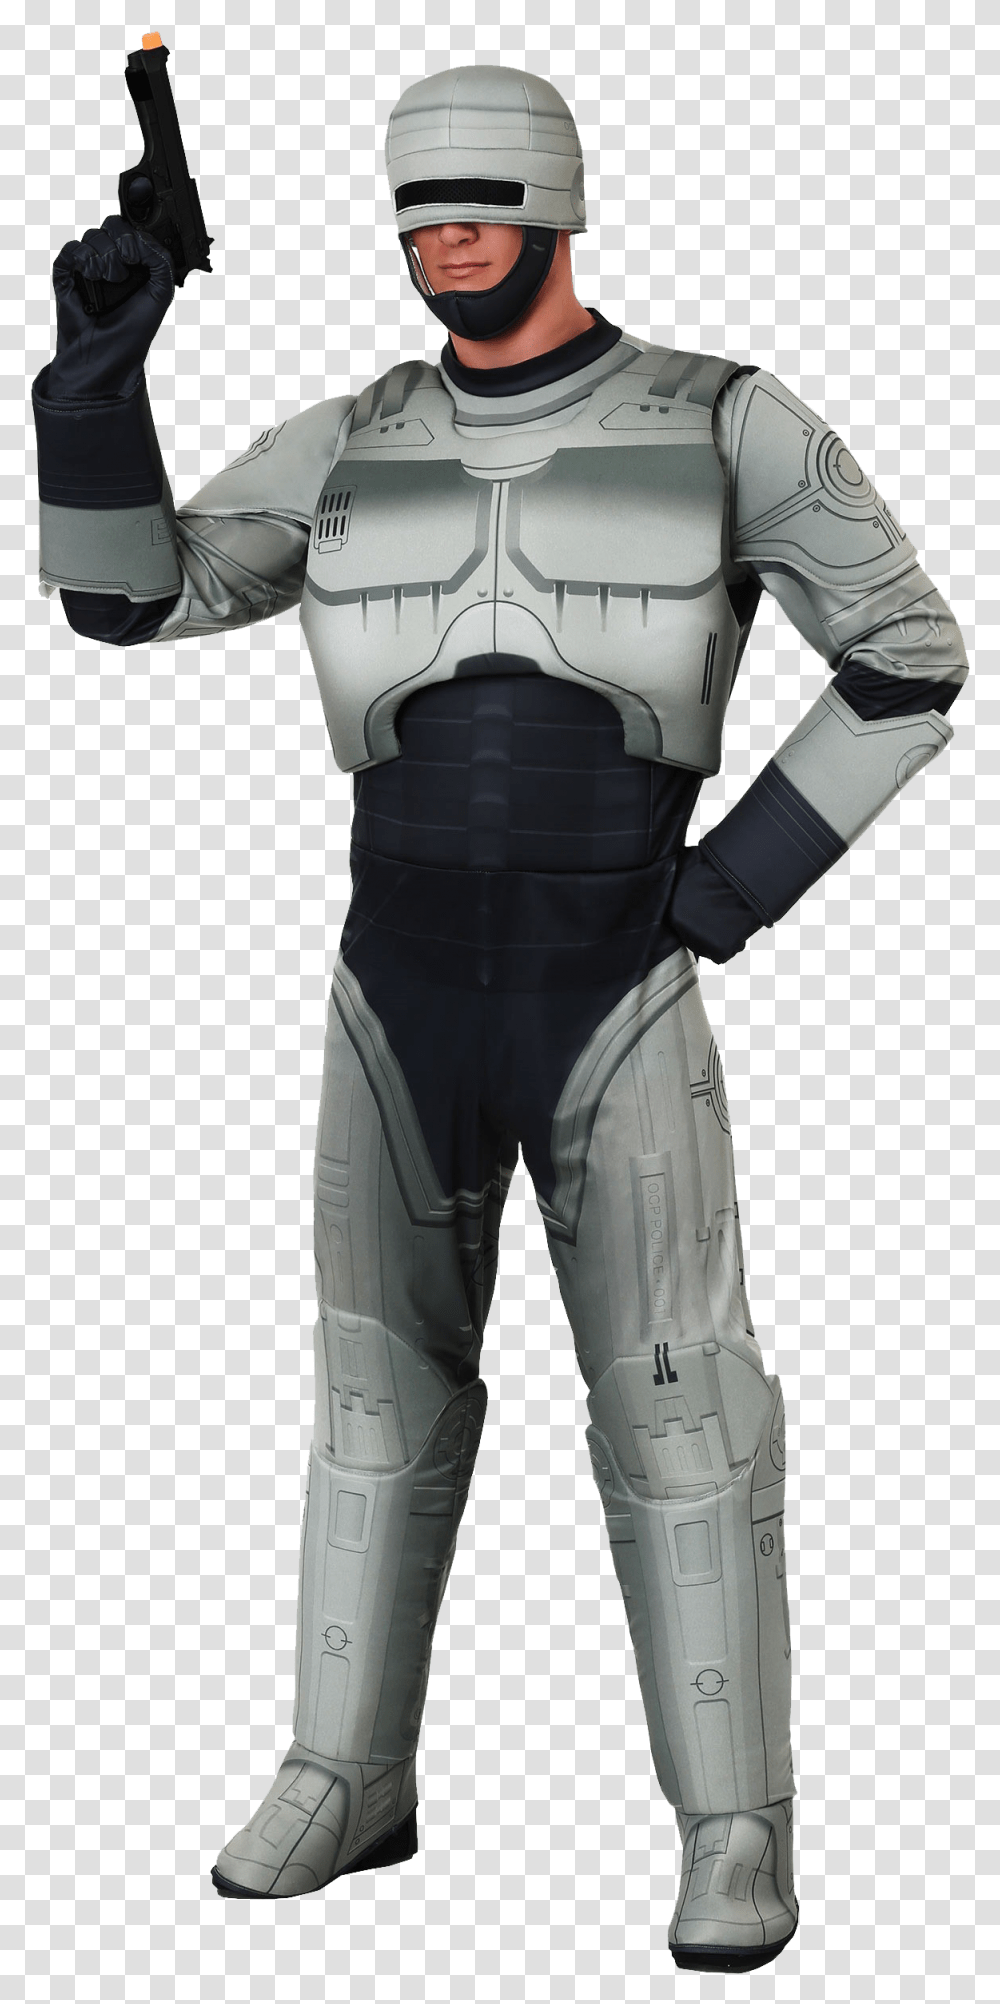 Robocop Image File Robocop Suit, Person, Human, Helmet Transparent Png